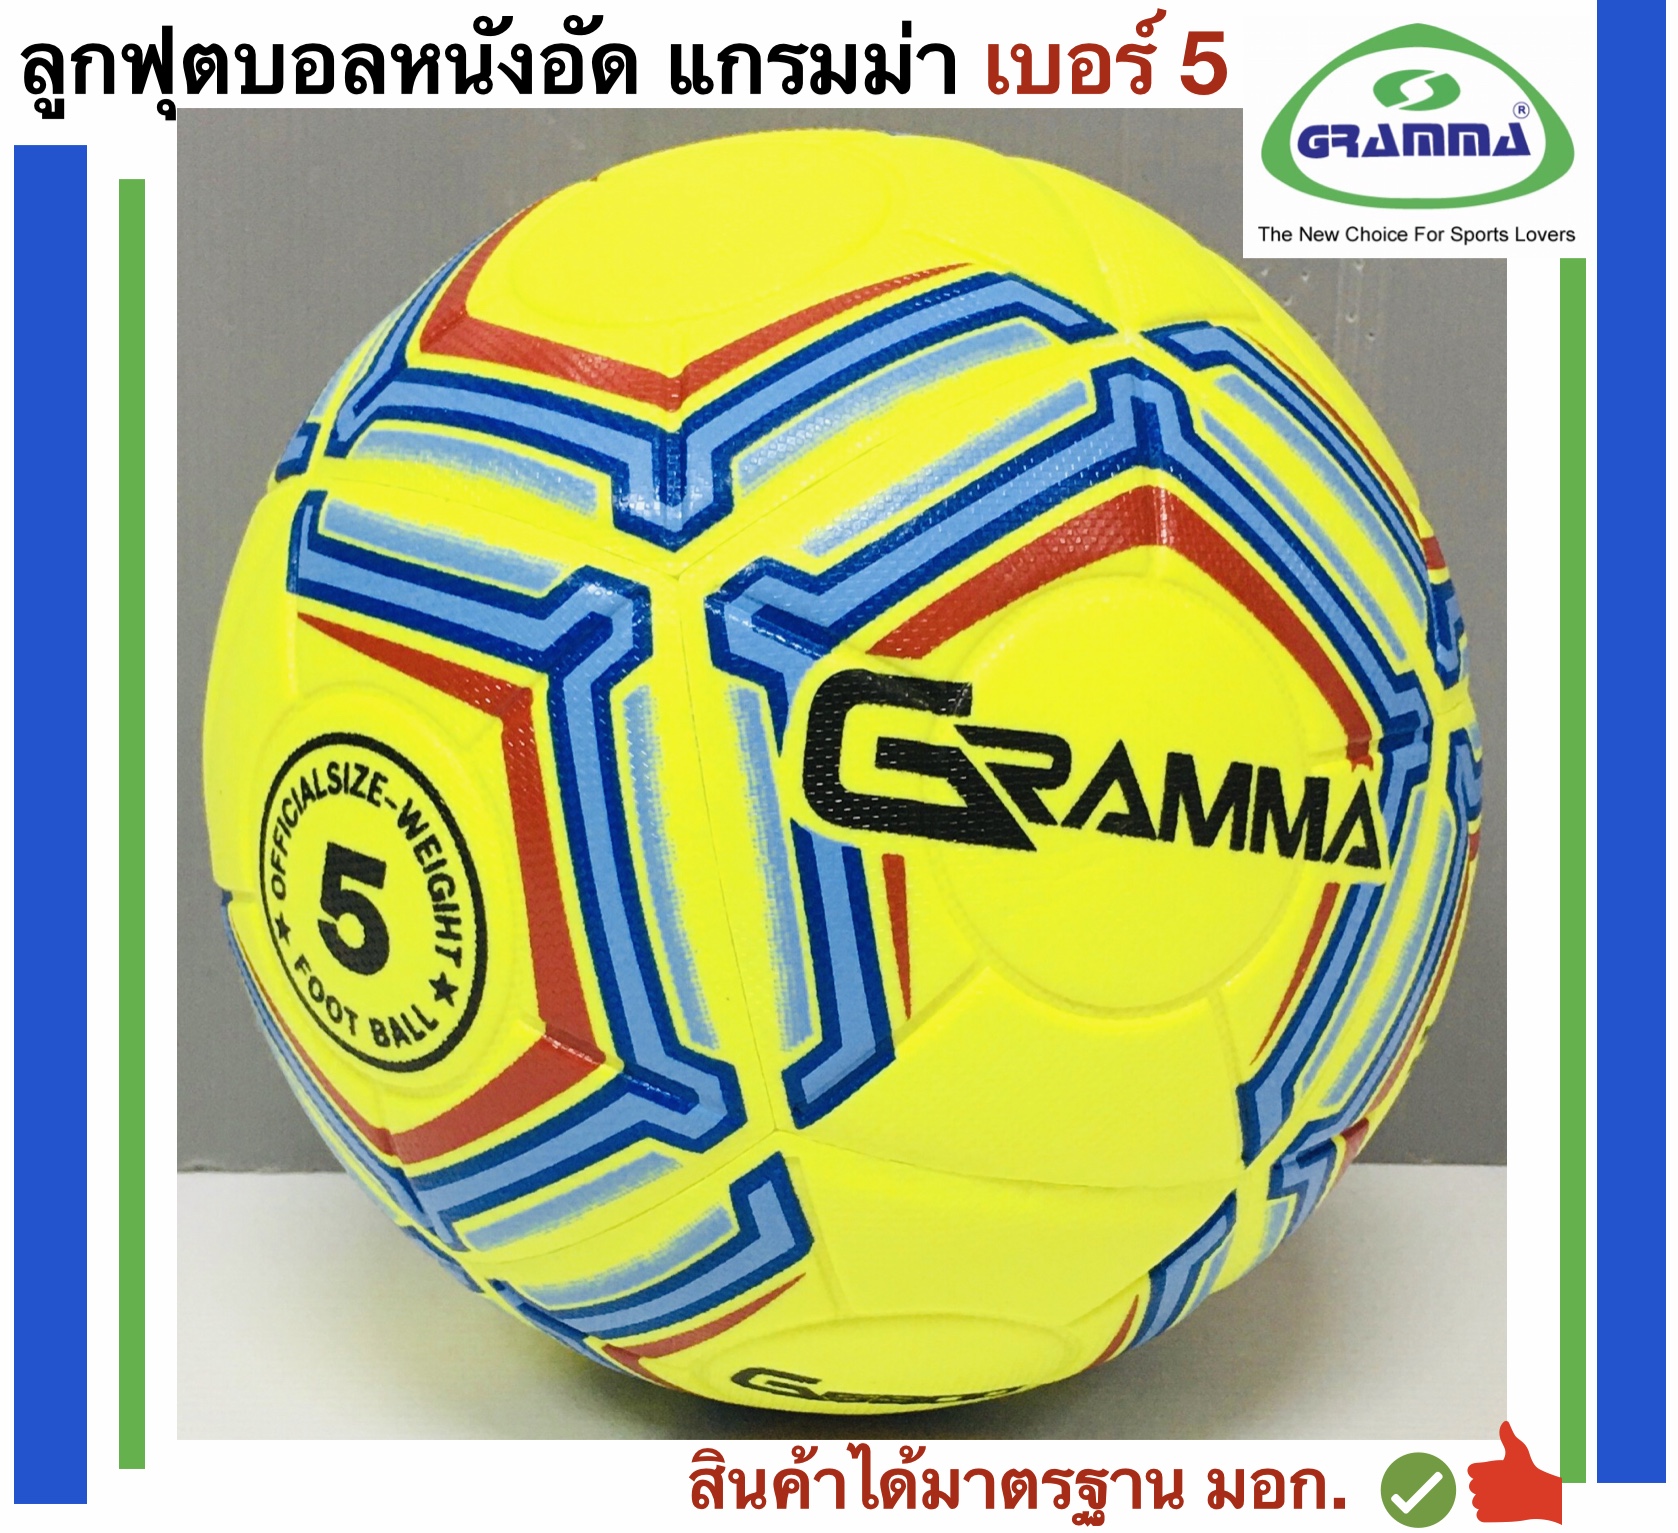 มุมมองเพิ่มเติมของสินค้า Gramma Sport ลูกฟุตบอลหนังอัด รุ่นสี เบอร์ 5 แกรมม่า แถมฟรี ตาข่ายใส่ลูกบอลและเข็มสูบลม